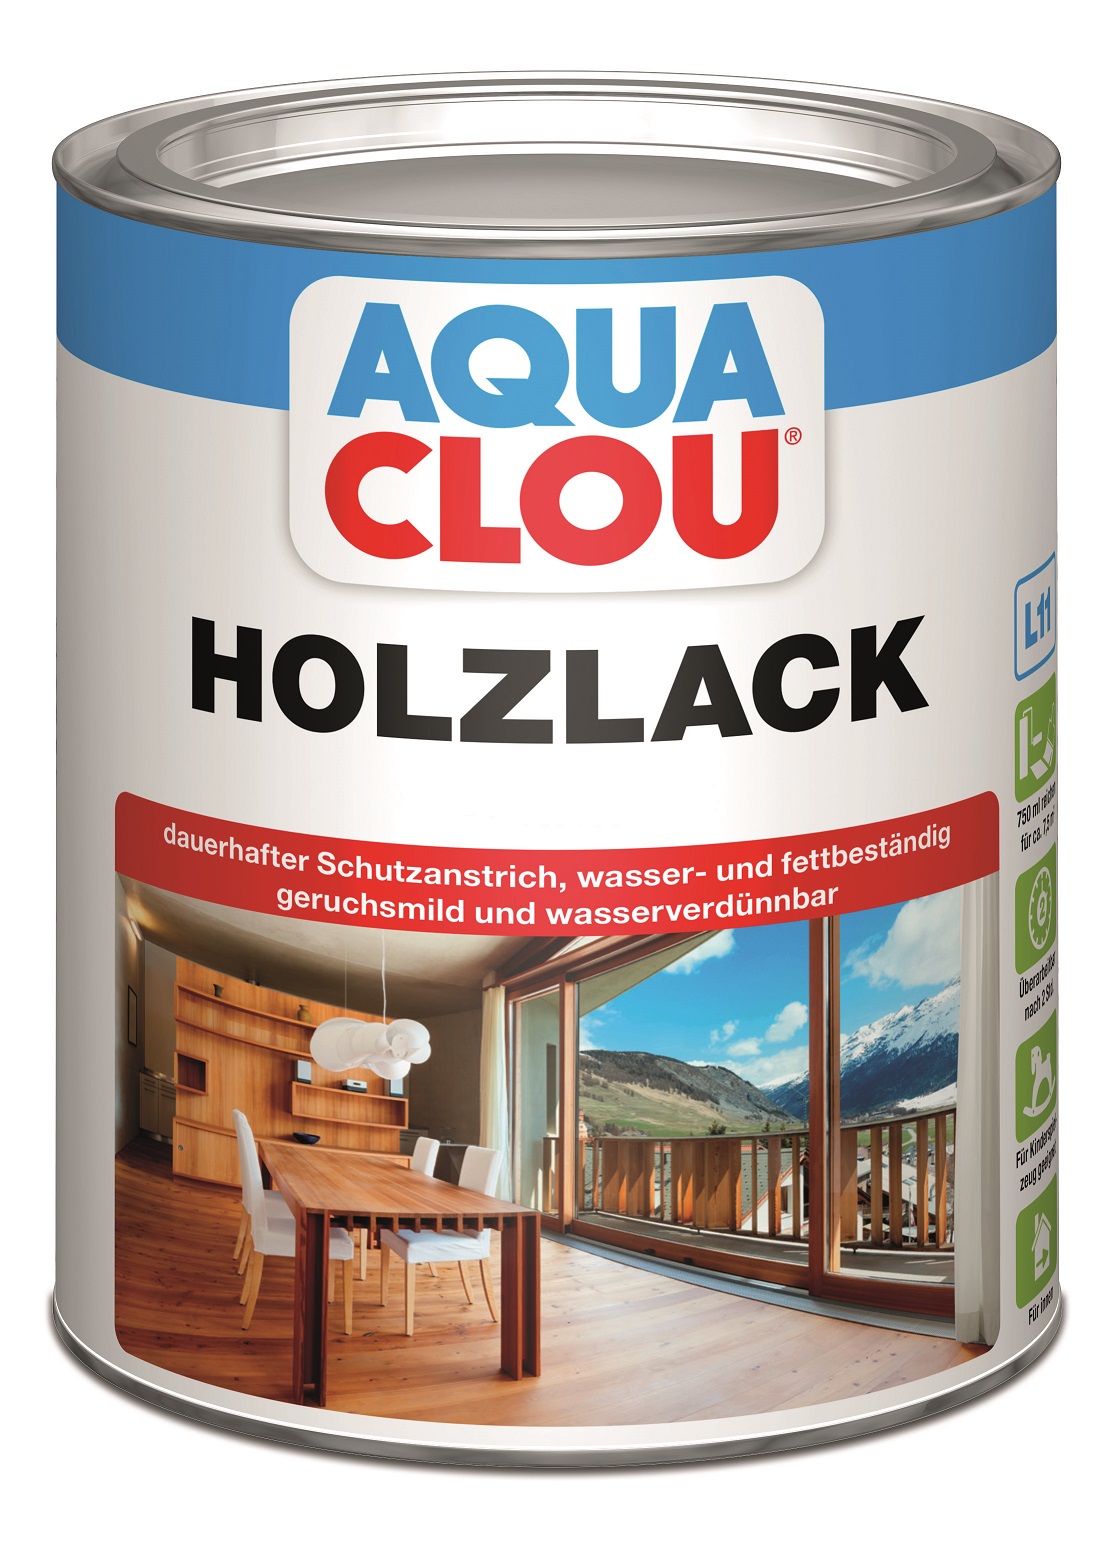 AQUA CLOU Holzlack L11, 750 ml - Farblos, matt